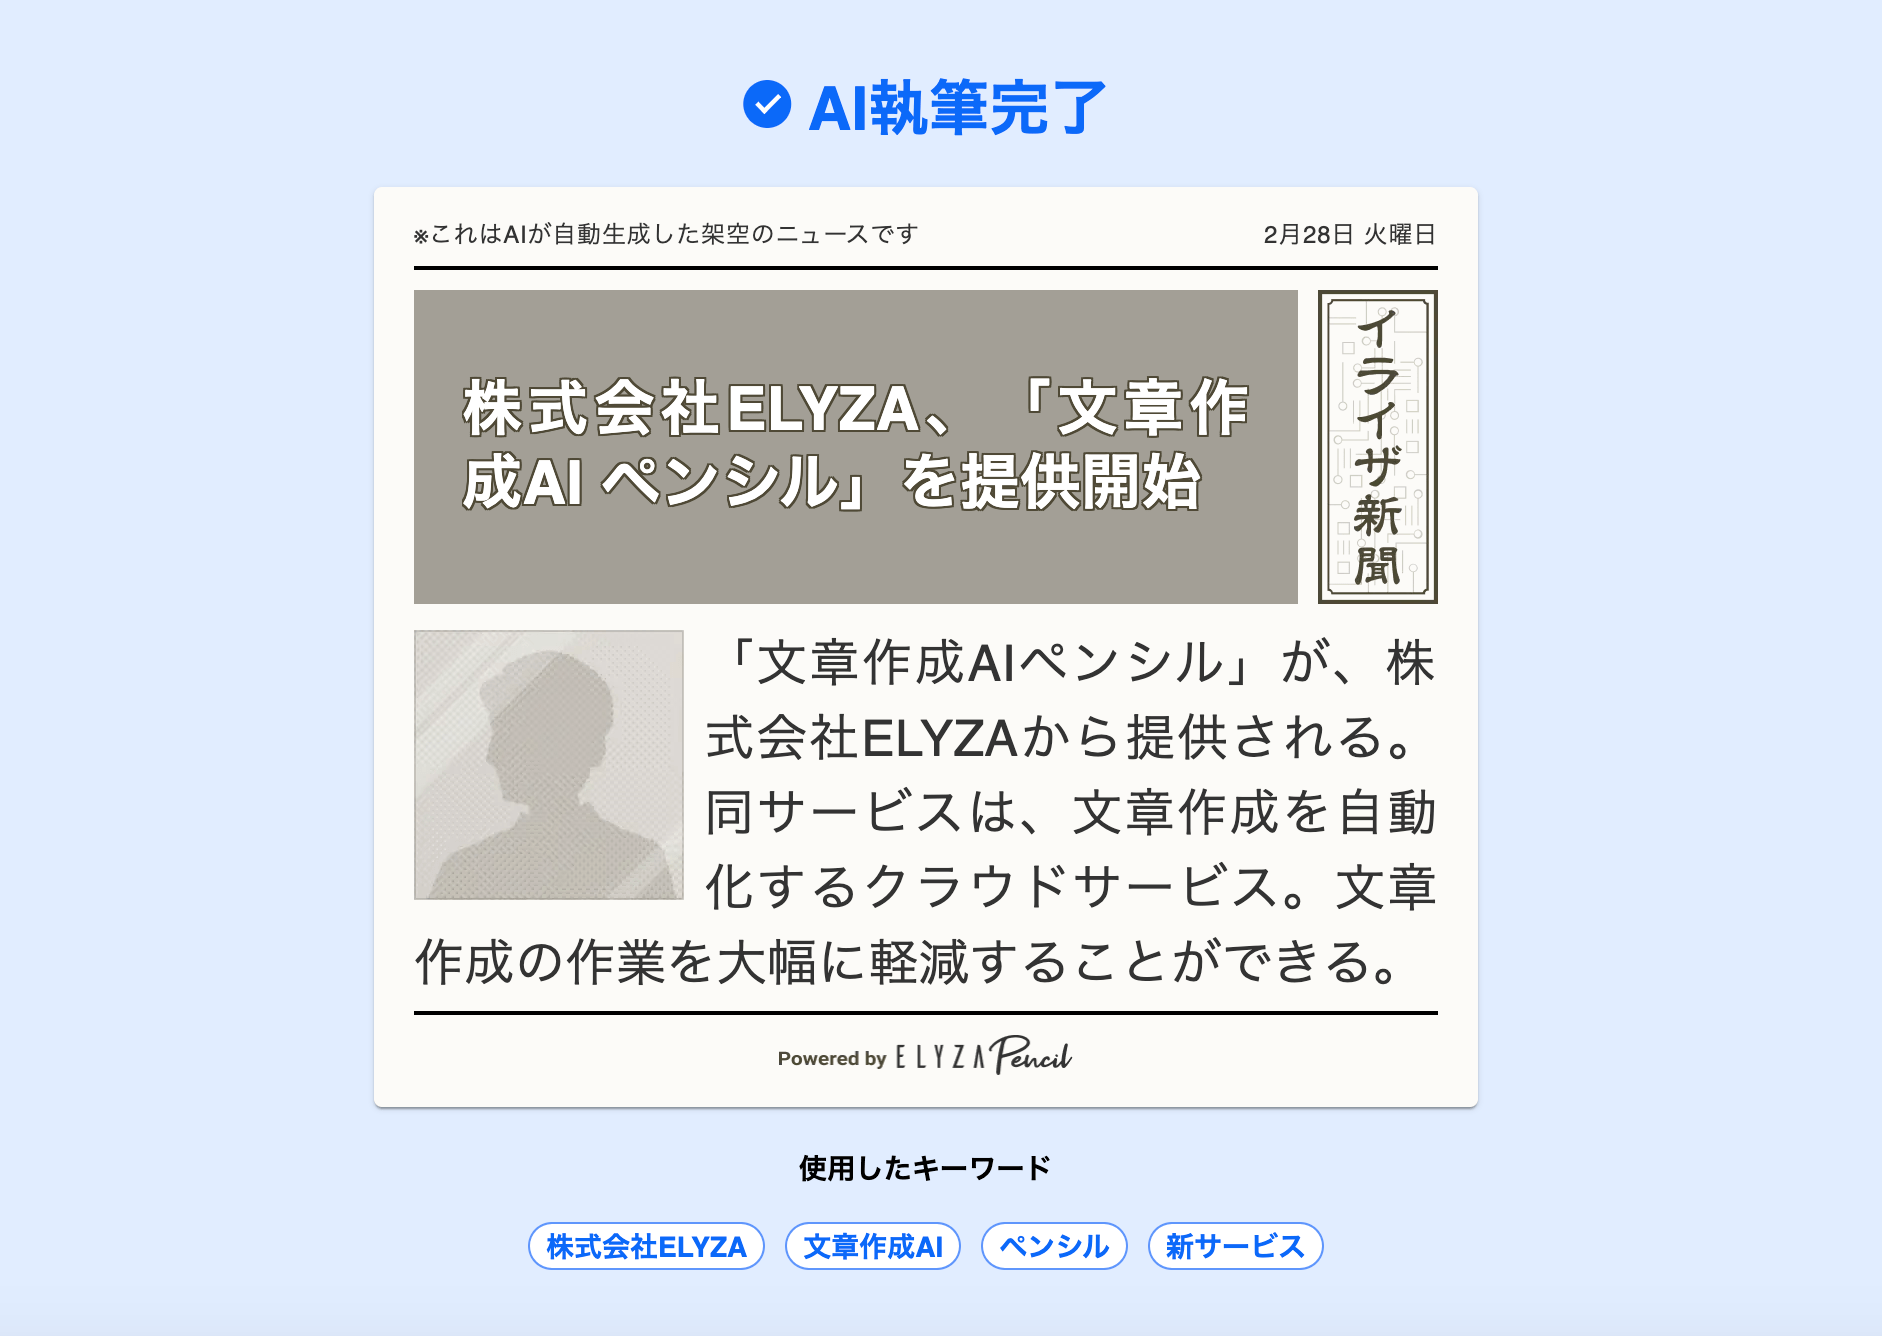 約6秒で日本語文章を生成する執筆AIが公開、複数のキーワードからメール文やニュース記事を作成